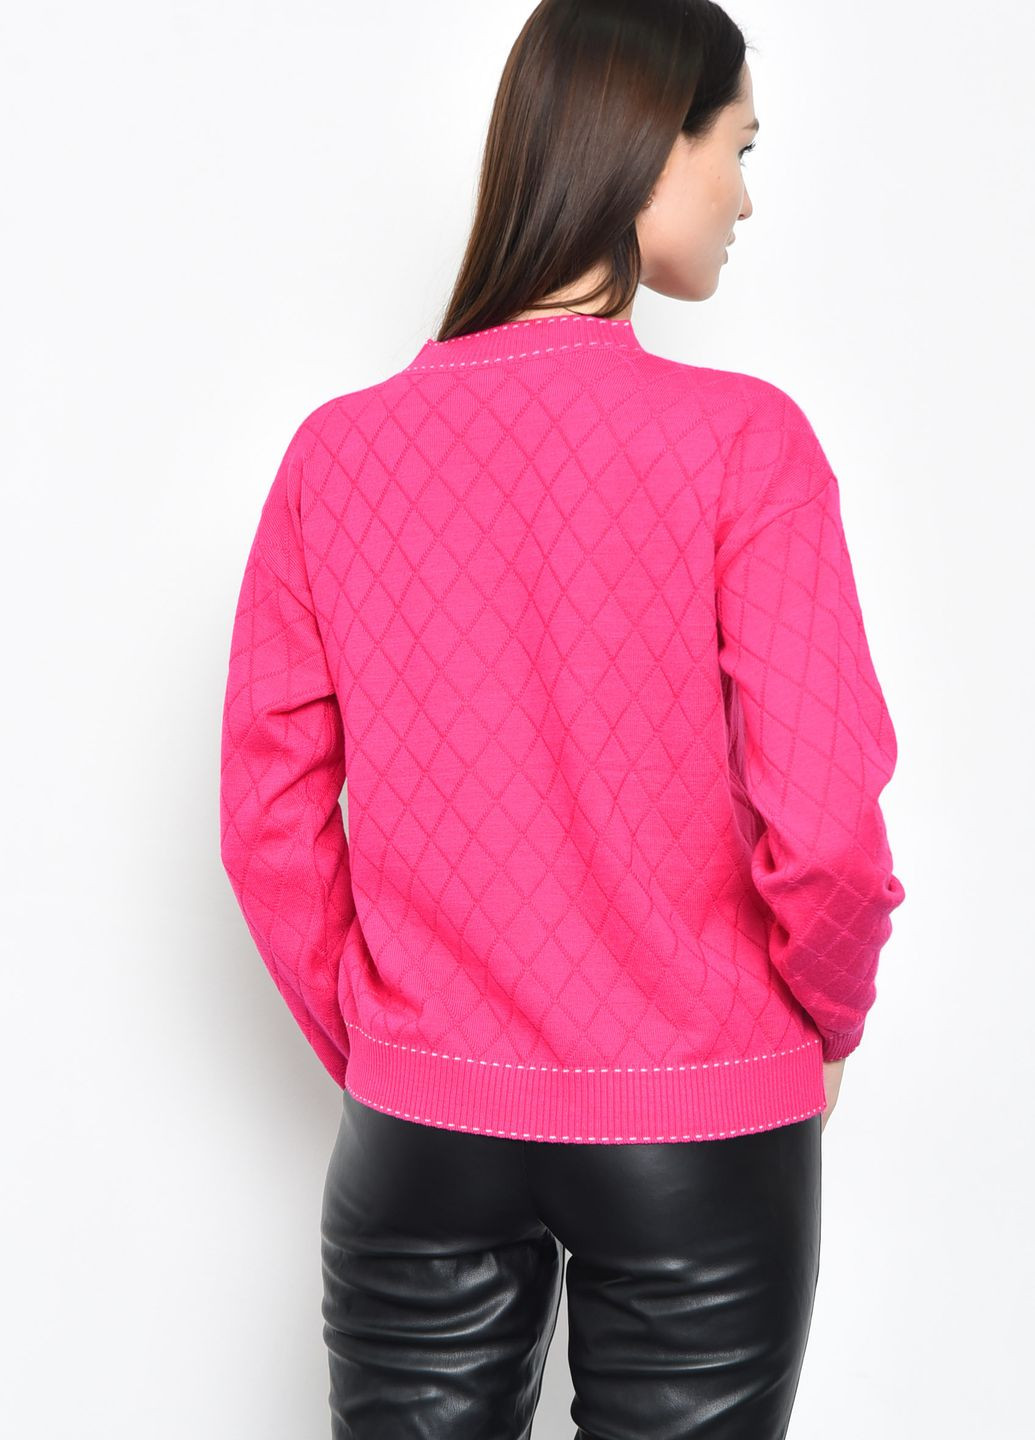 Розовый демисезонный свитер женский розового цвета пуловер Let's Shop